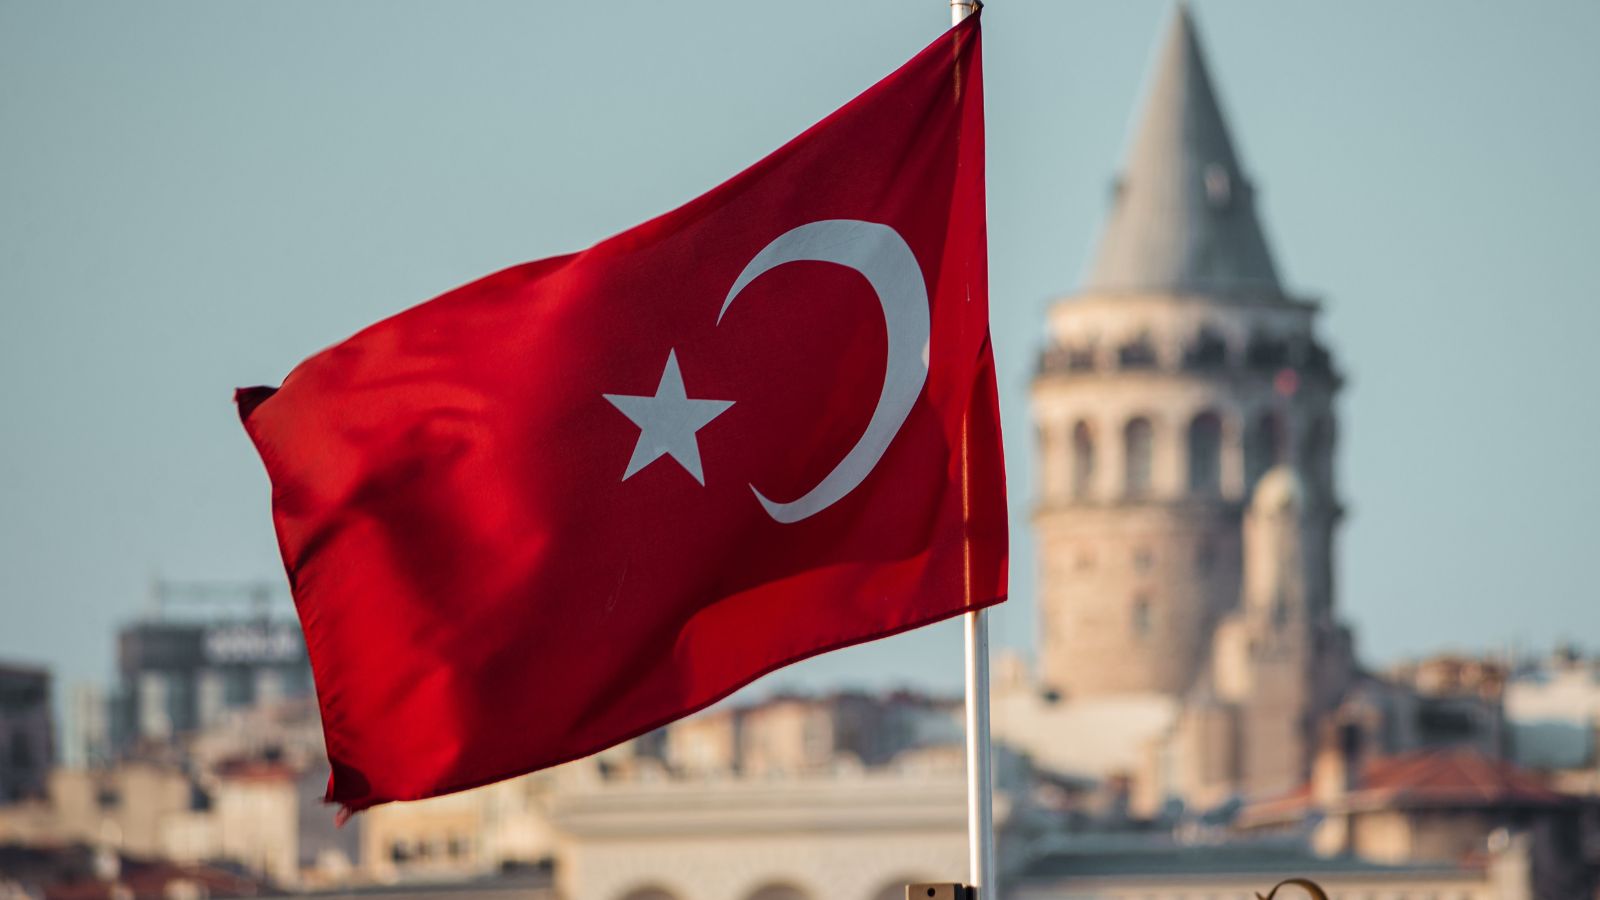 treo quốc kỳ là một trong những phong tục ở đám cưới Thổ Nhĩ Kỳ 